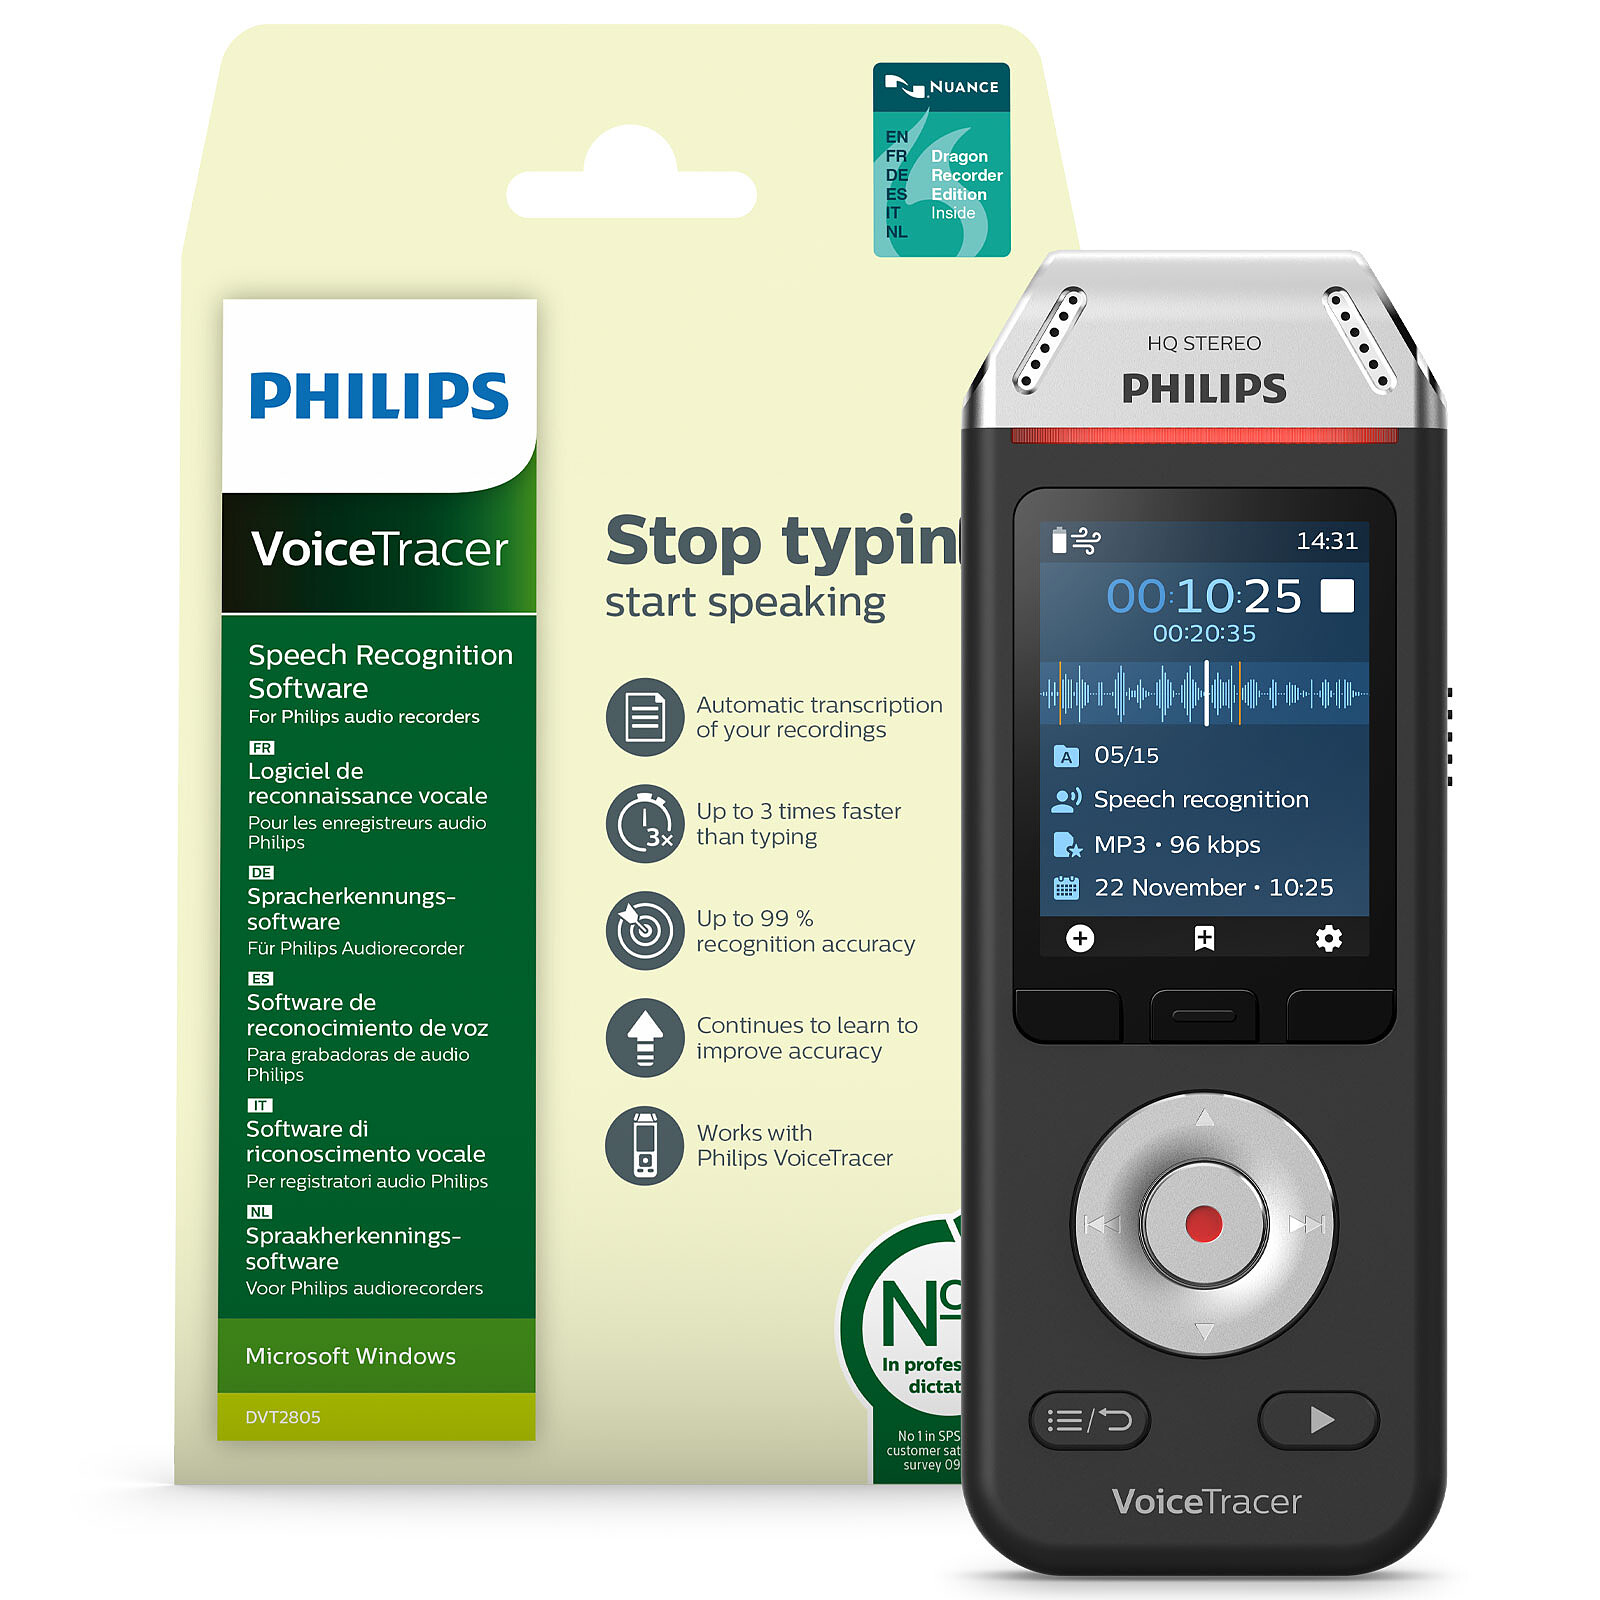 Philips DVT2810 + software di riconoscimento vocale - Registratore vocale -  Garanzia 3 anni LDLC